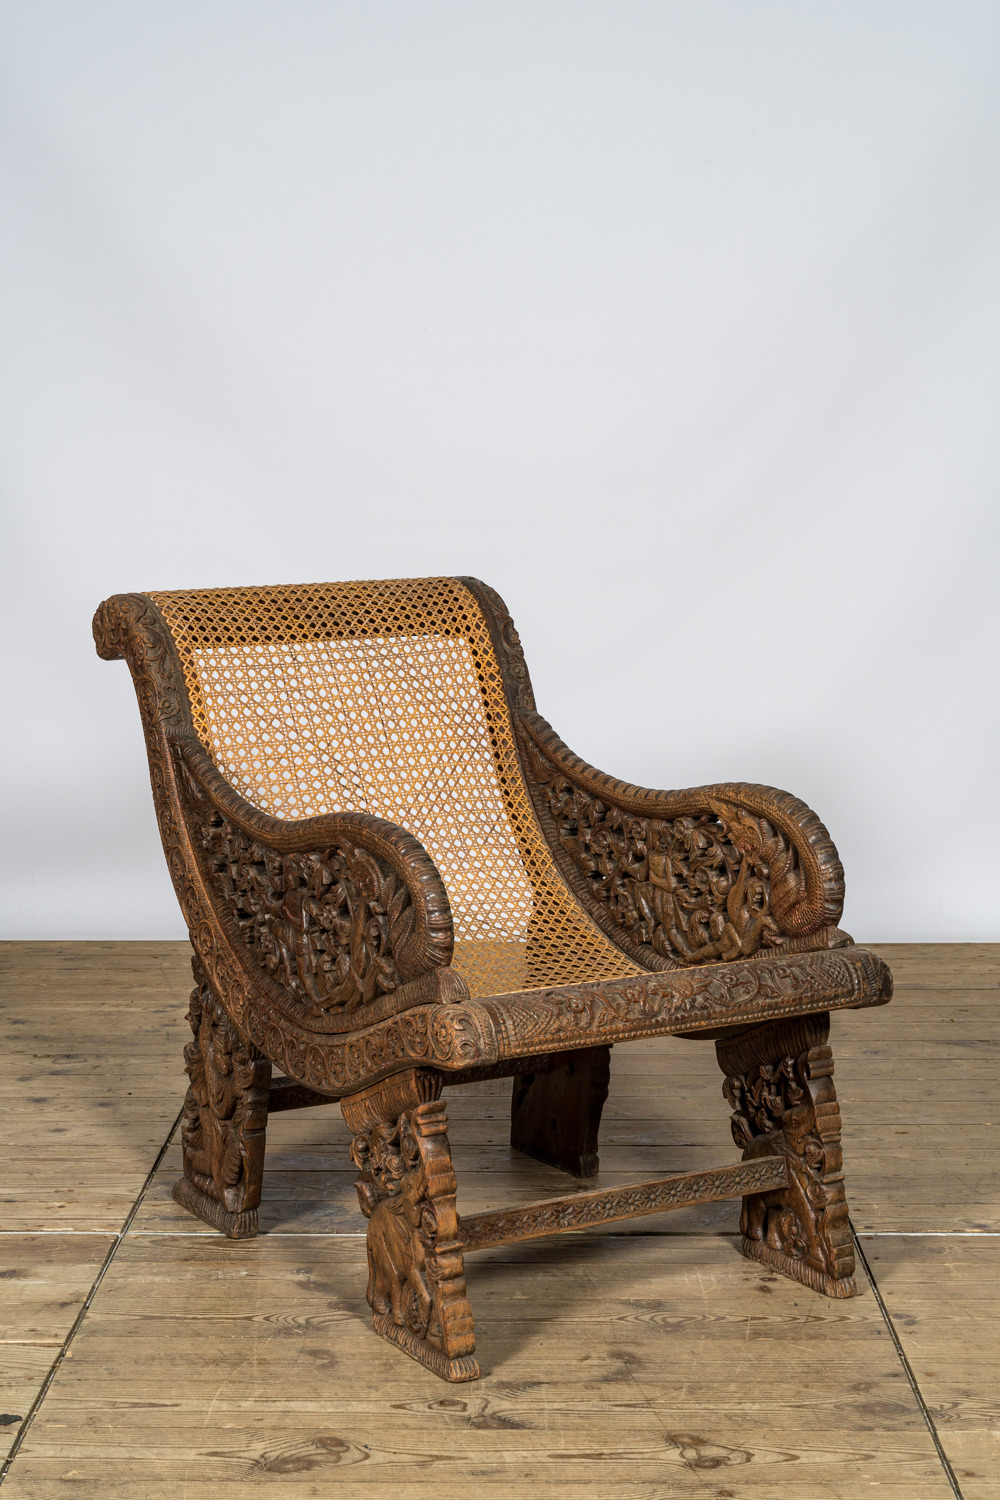 Een koloniale eikenhouten ajourgedecoreerde fauteuil met 'cannage', 19/20e eeuw